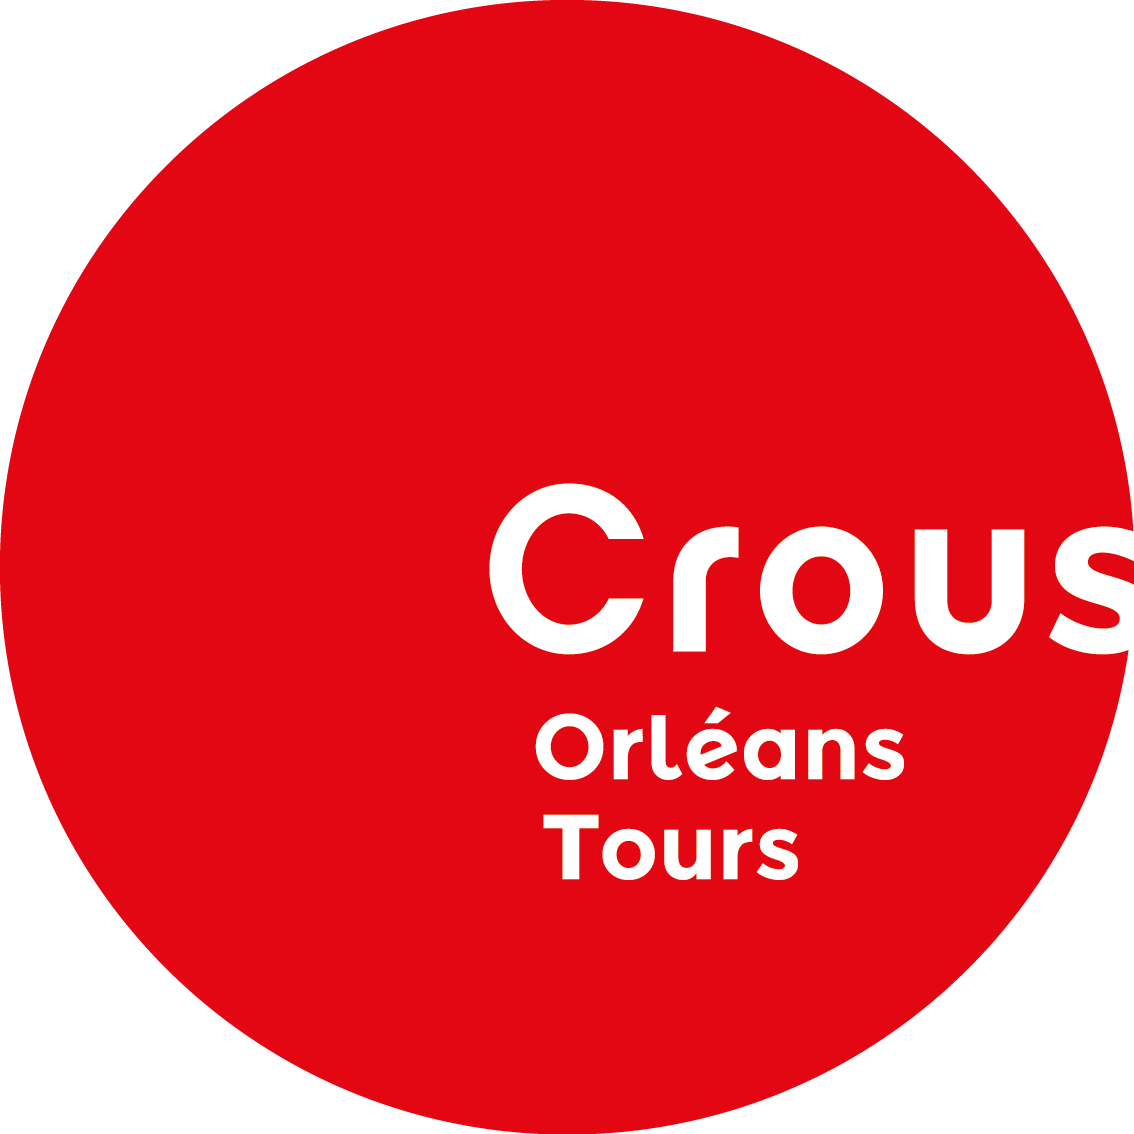 fiche administrative crous orleans tours